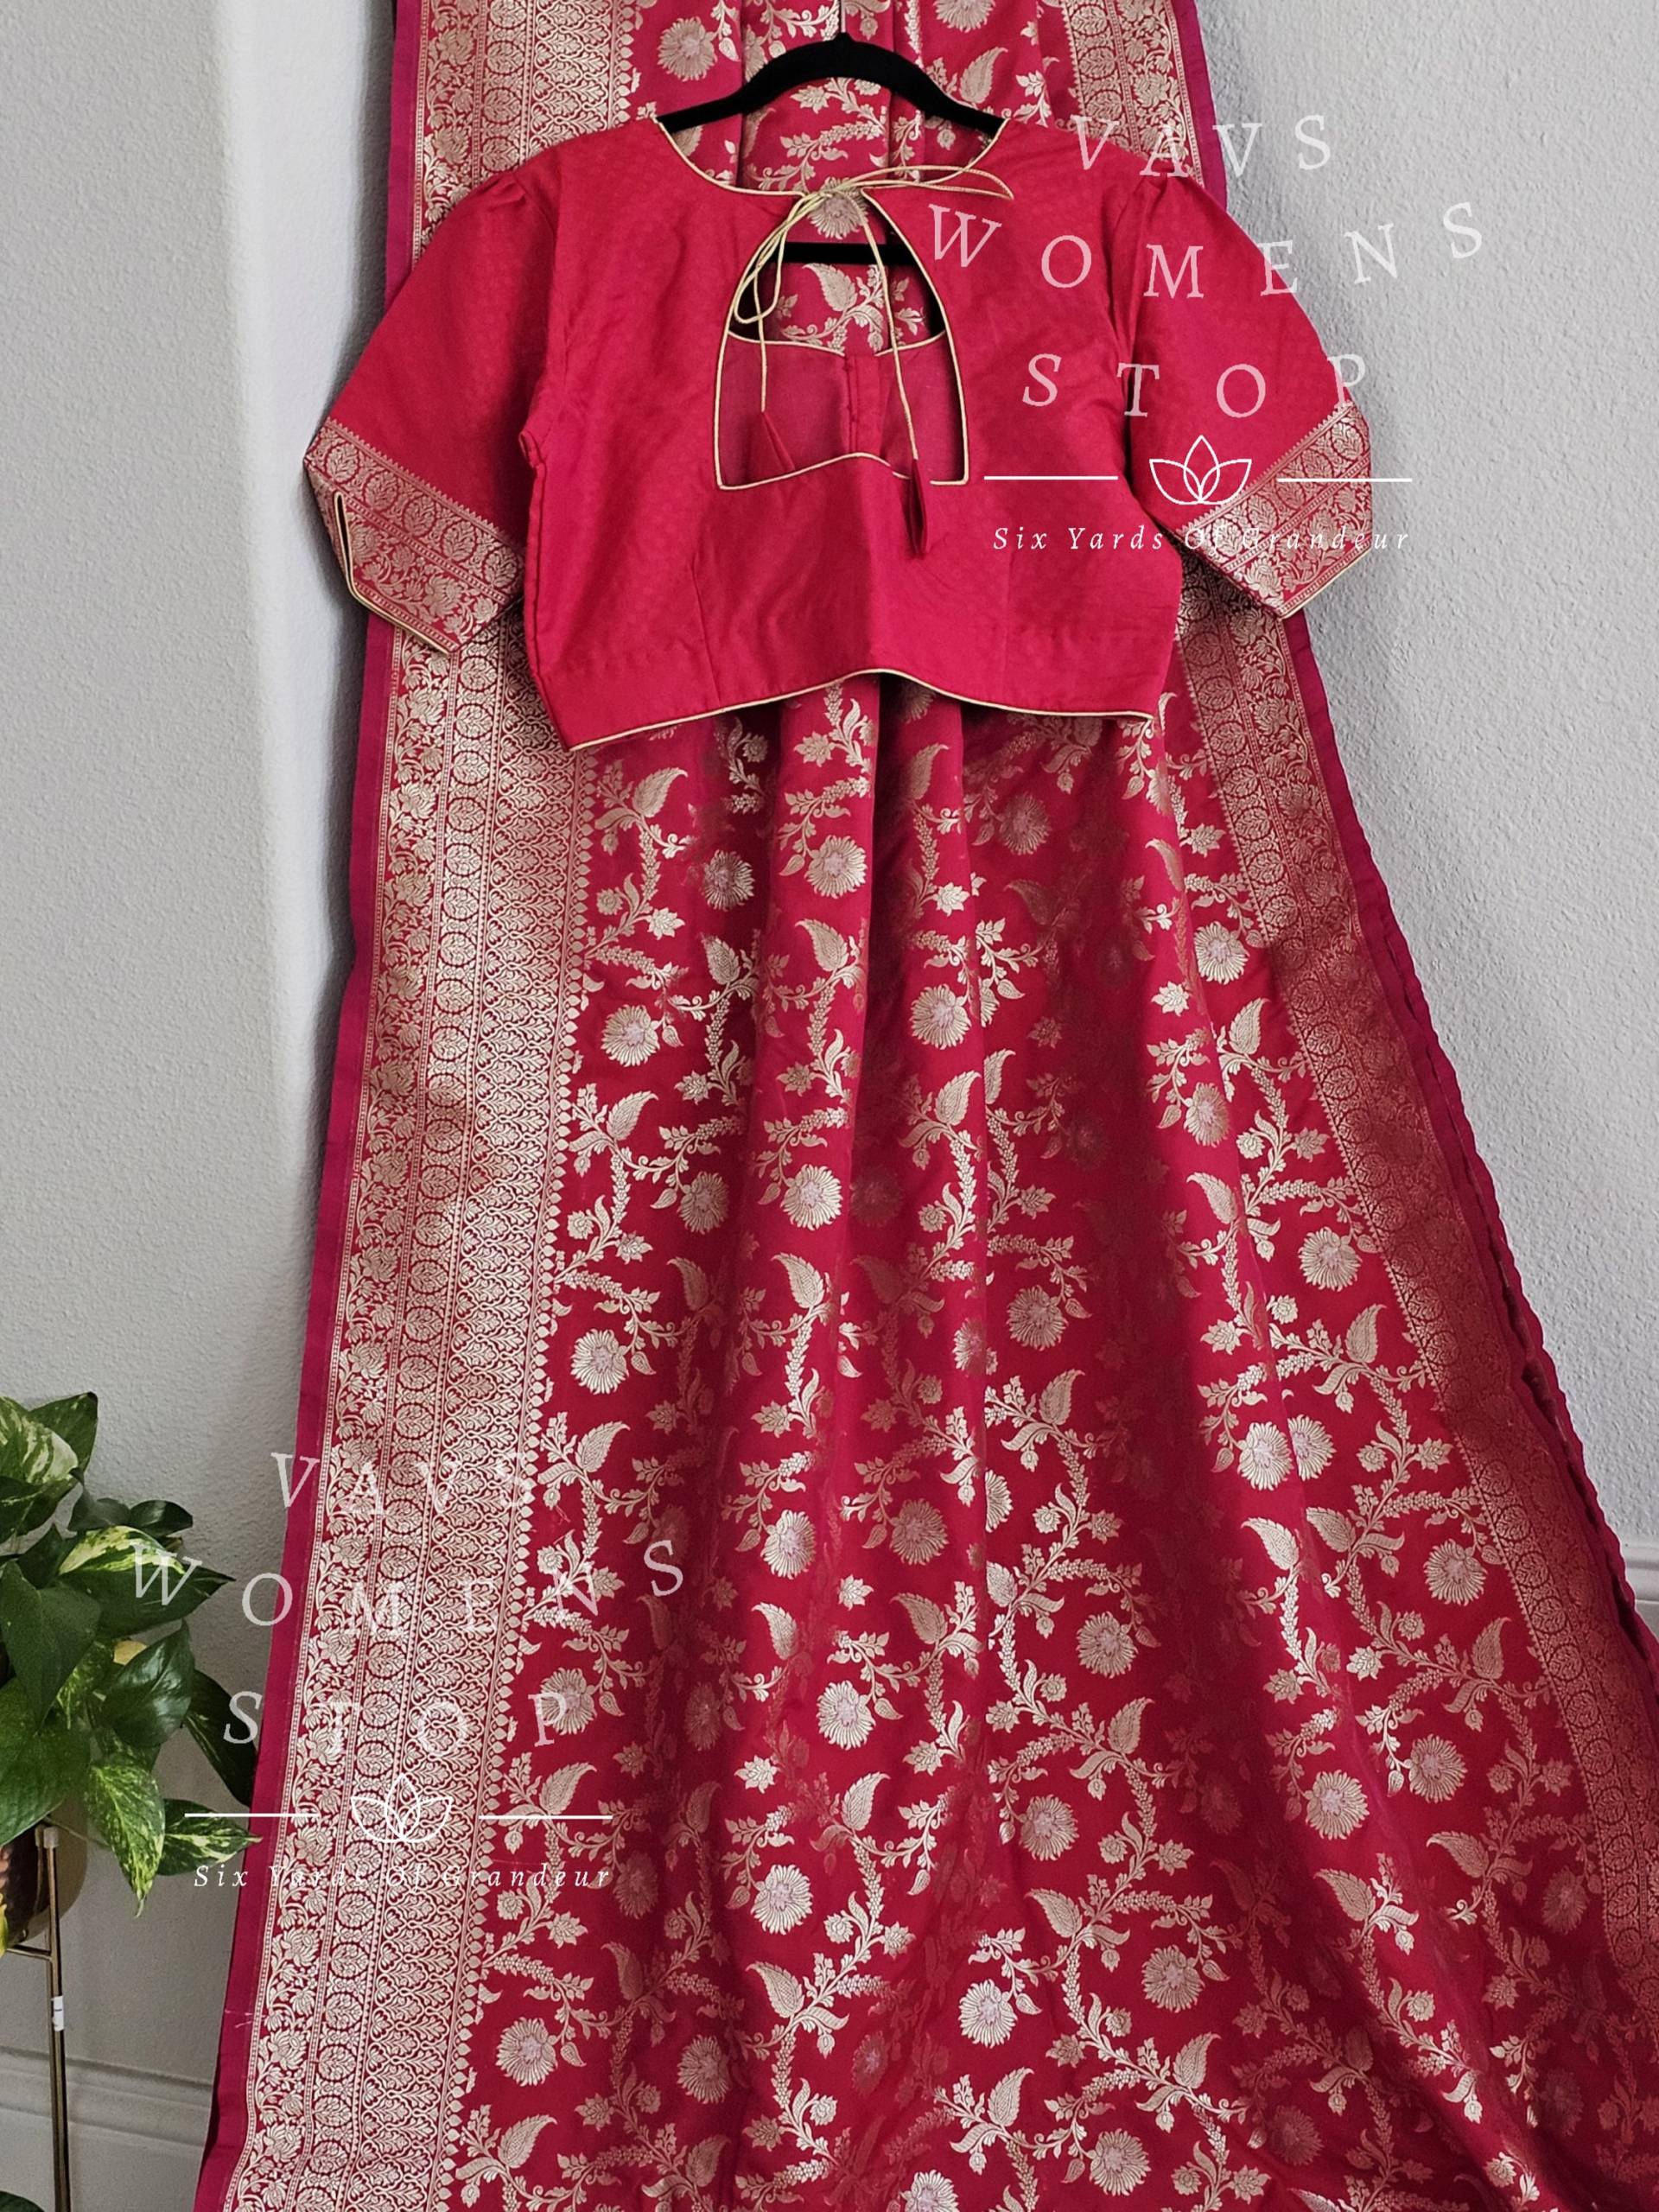 Benarasi Uppada Soft Silk Designer Saree - Bluse Größe 40 Reicht Bis 46 Fertig Zum Versenden, Aus Prosper, Texas Vavs Womens Stop von VAVSWomensStop